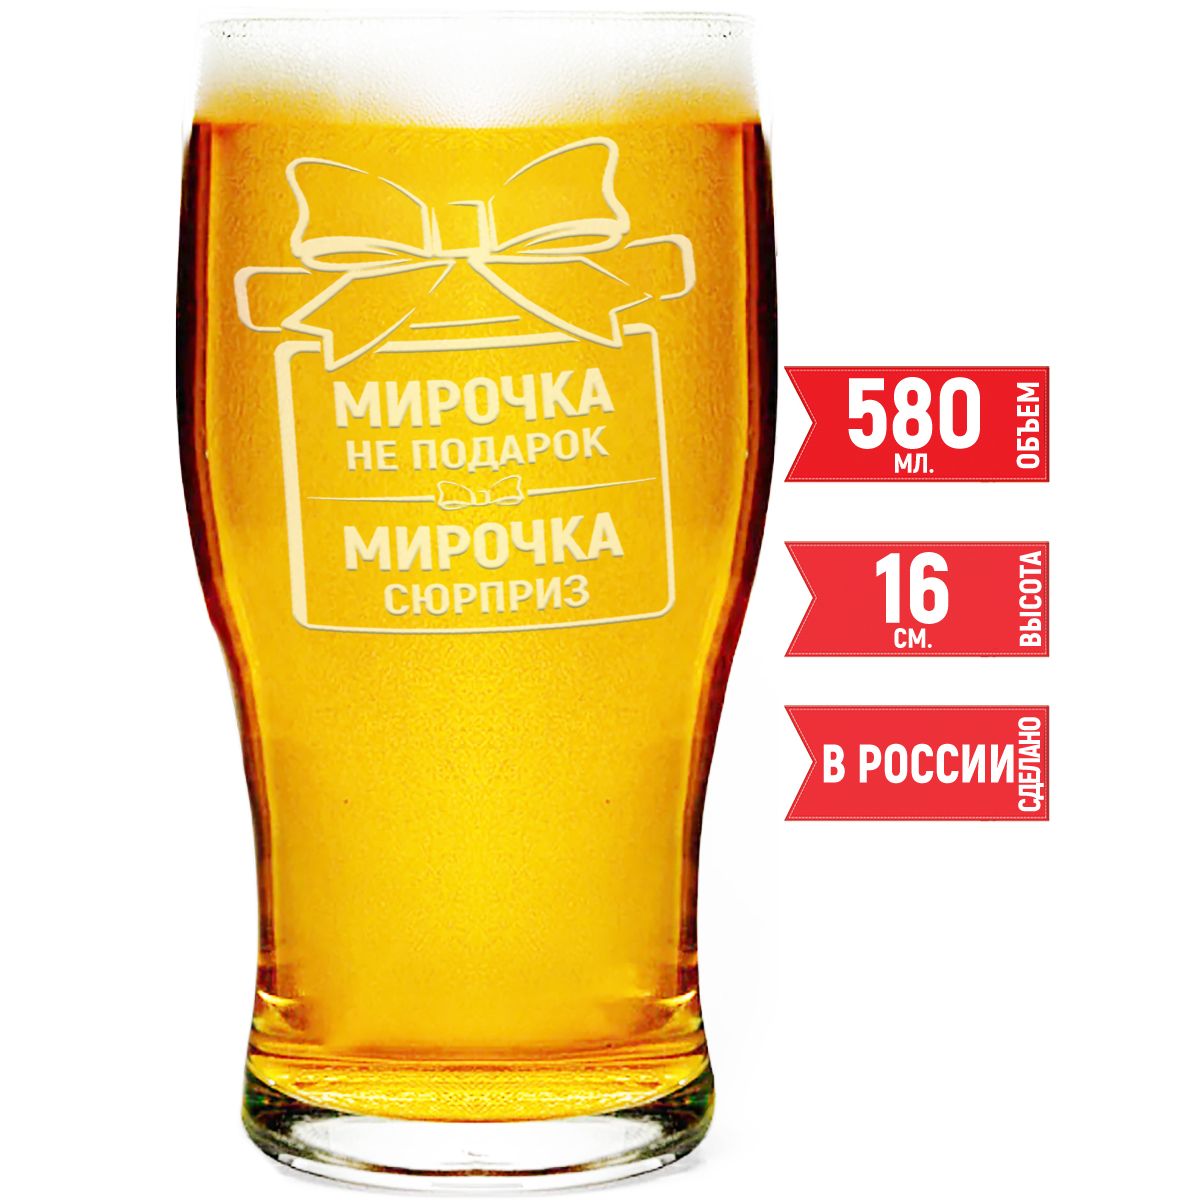 Кружка для пива AV Podarki Мирочка не подарок, Мирочка сюрприз 580 мл